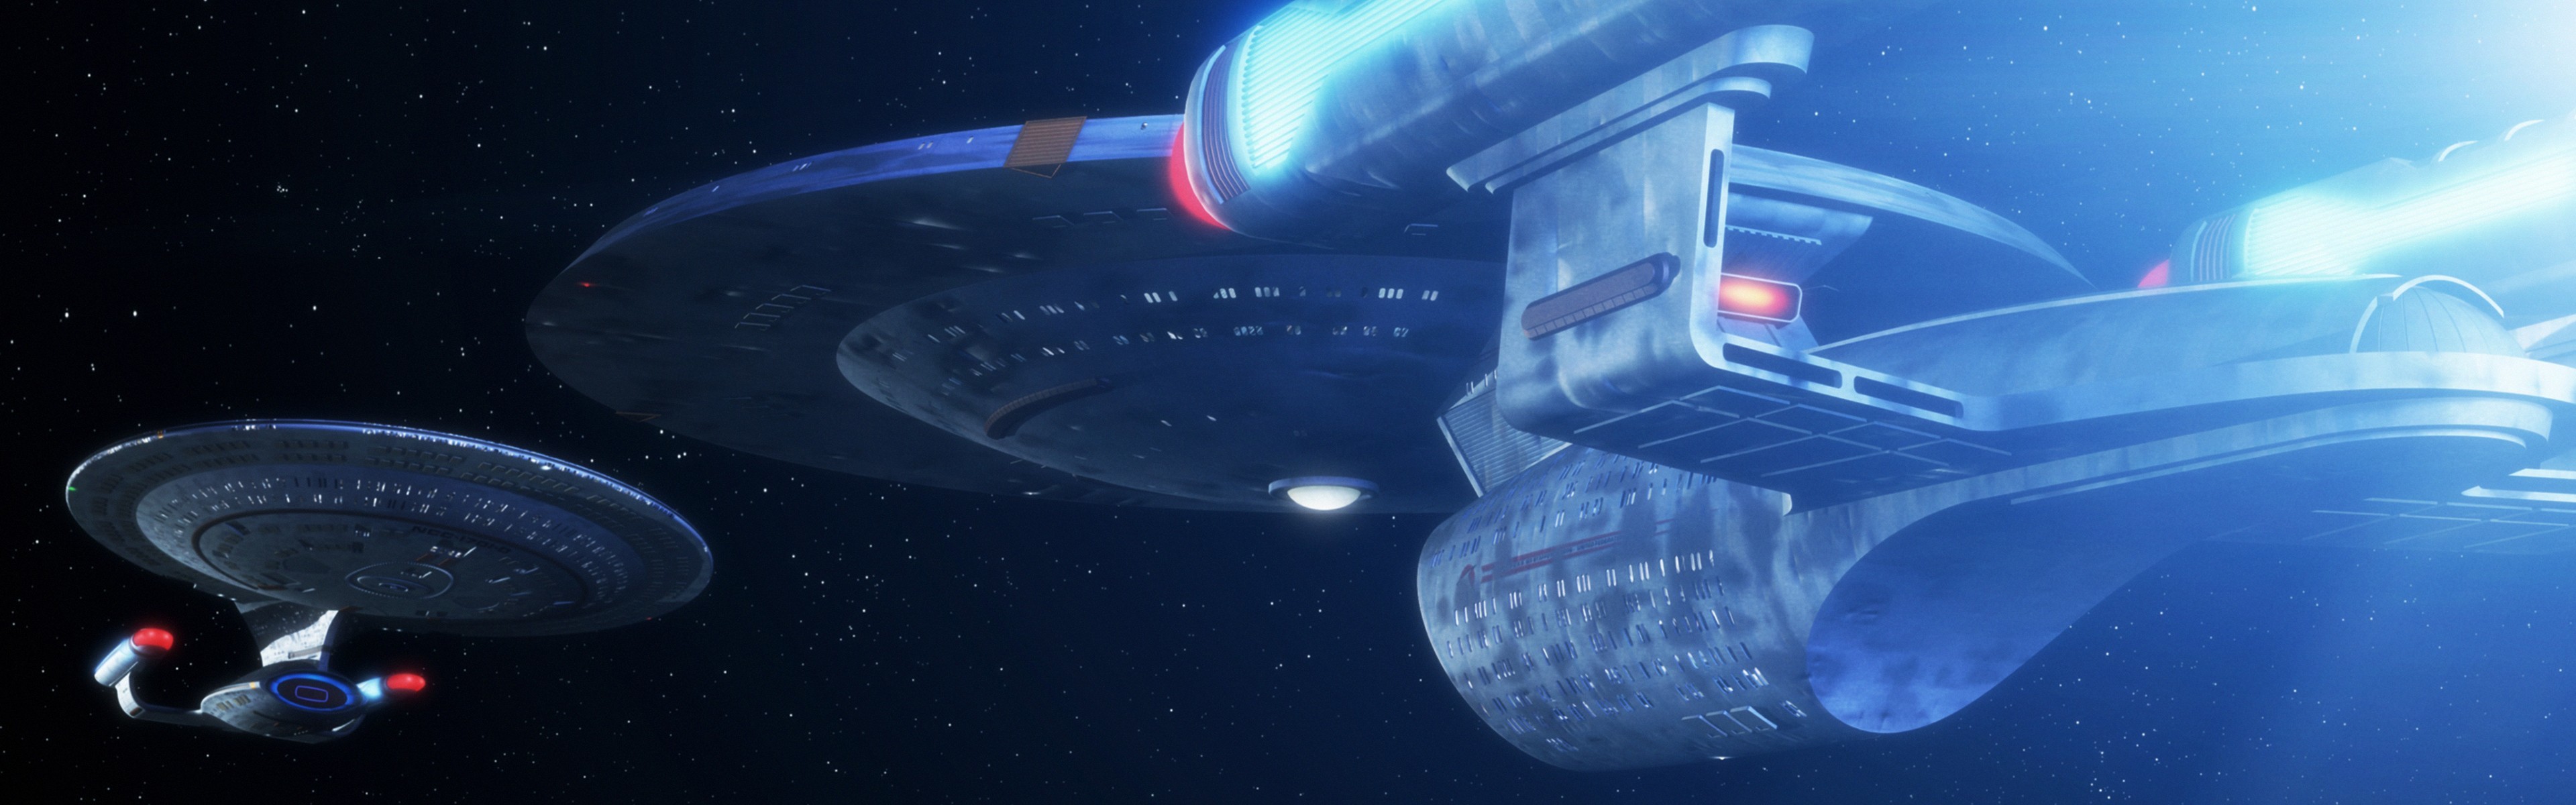 General Star Trek USS Enterprise (spaceship) dual monitors  multiple display space